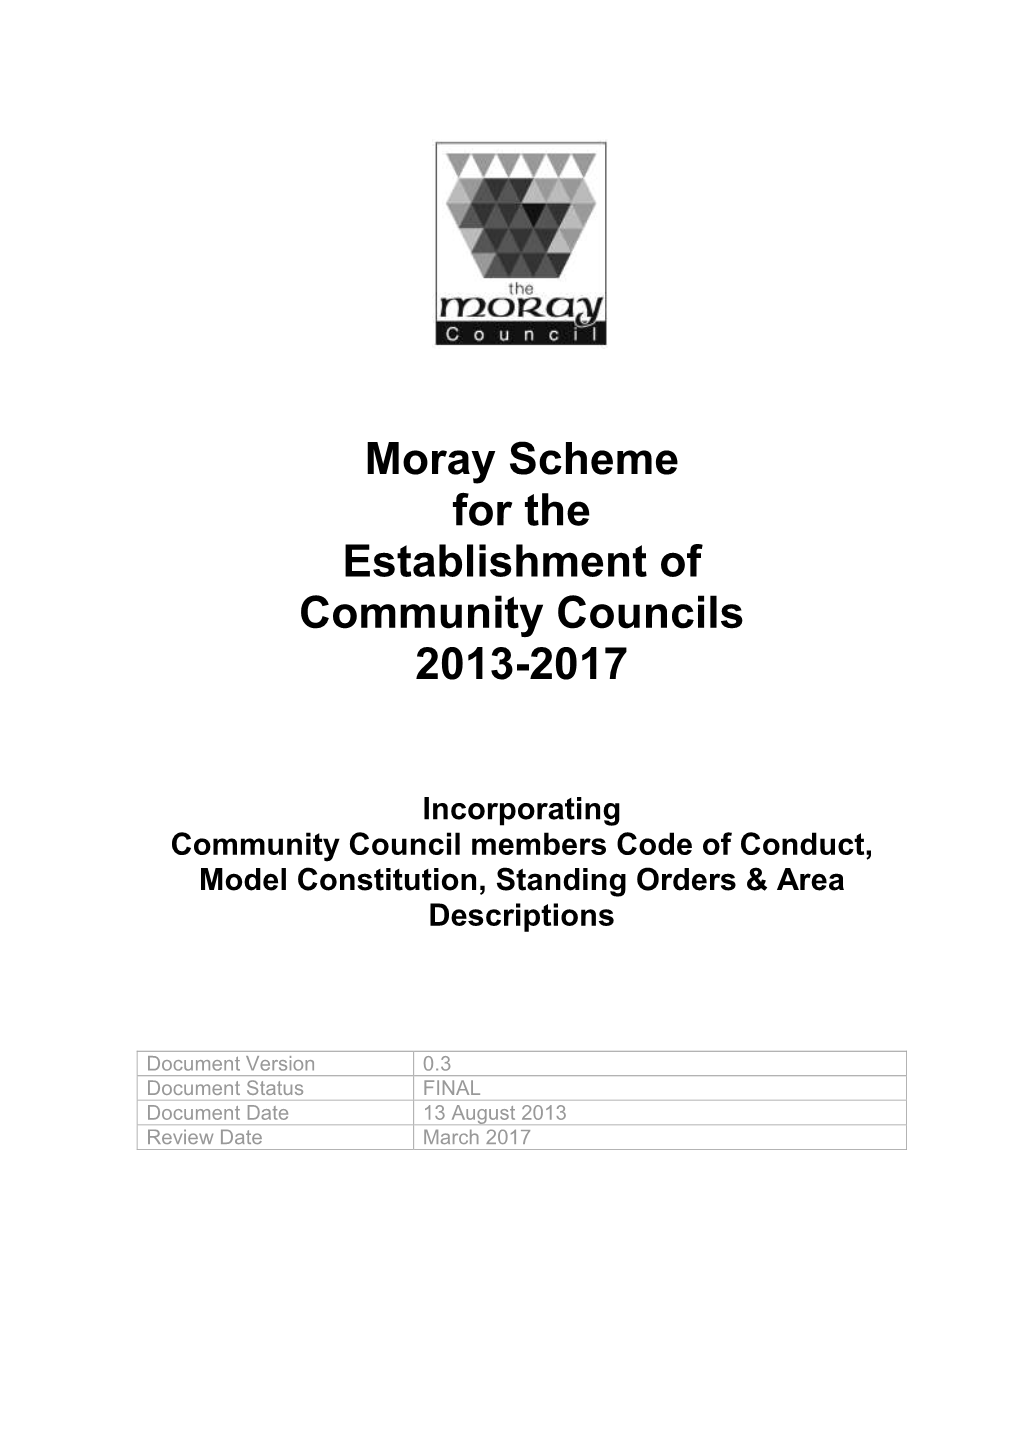 The Moray Council Scheme for Establishment of Community Councils